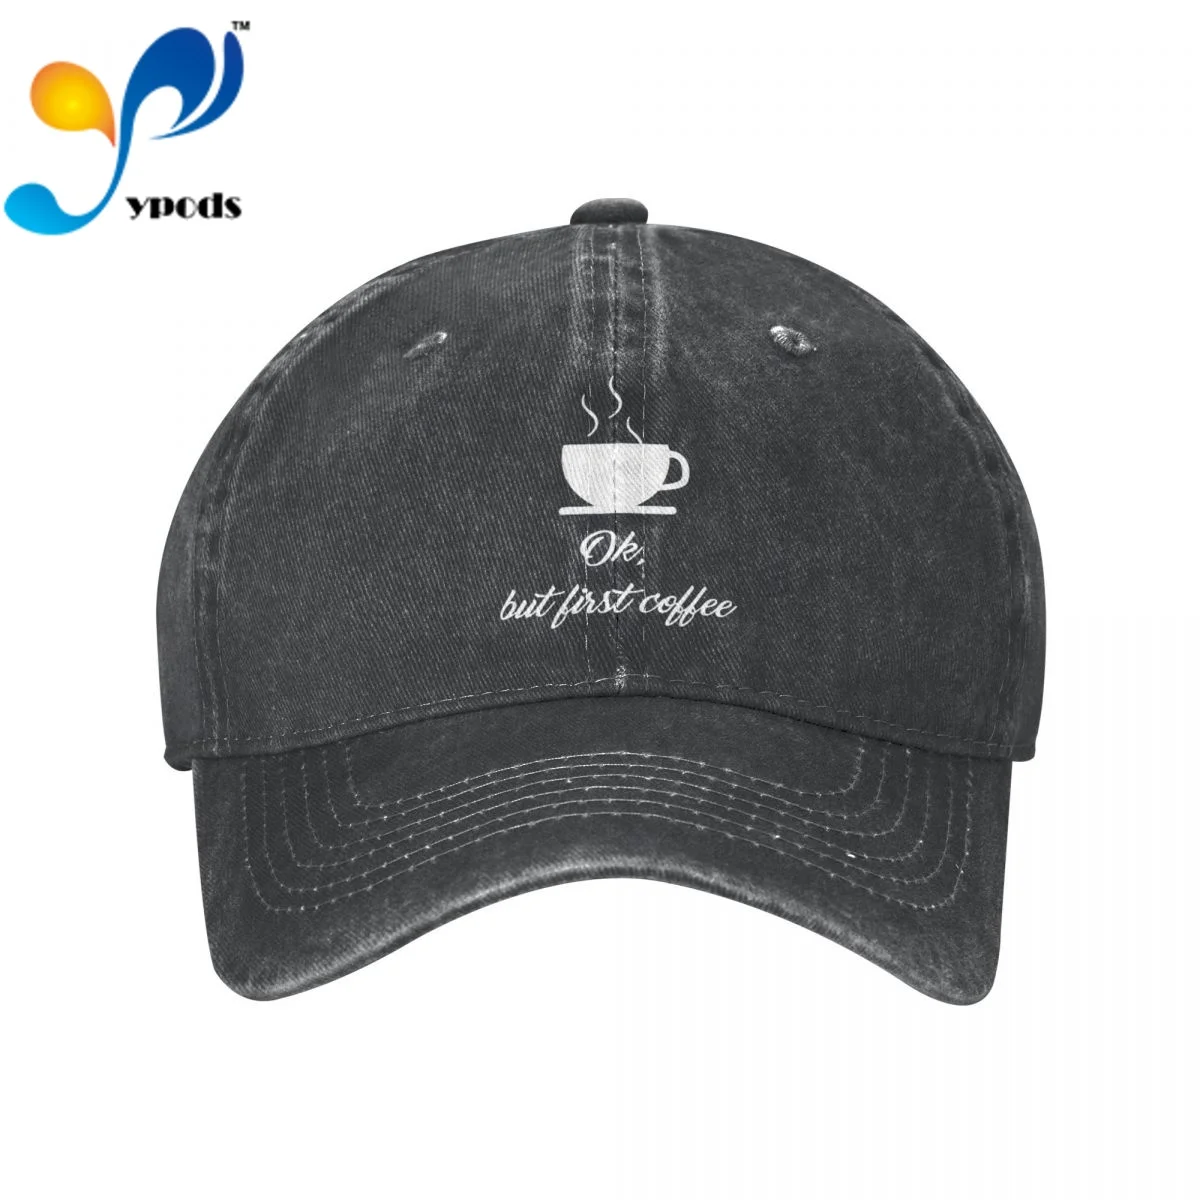 

OK BUT First Coffee Denim Baseball cap Snapback Hats Autumn Summer Hat for Men Women Caps Casquette hats